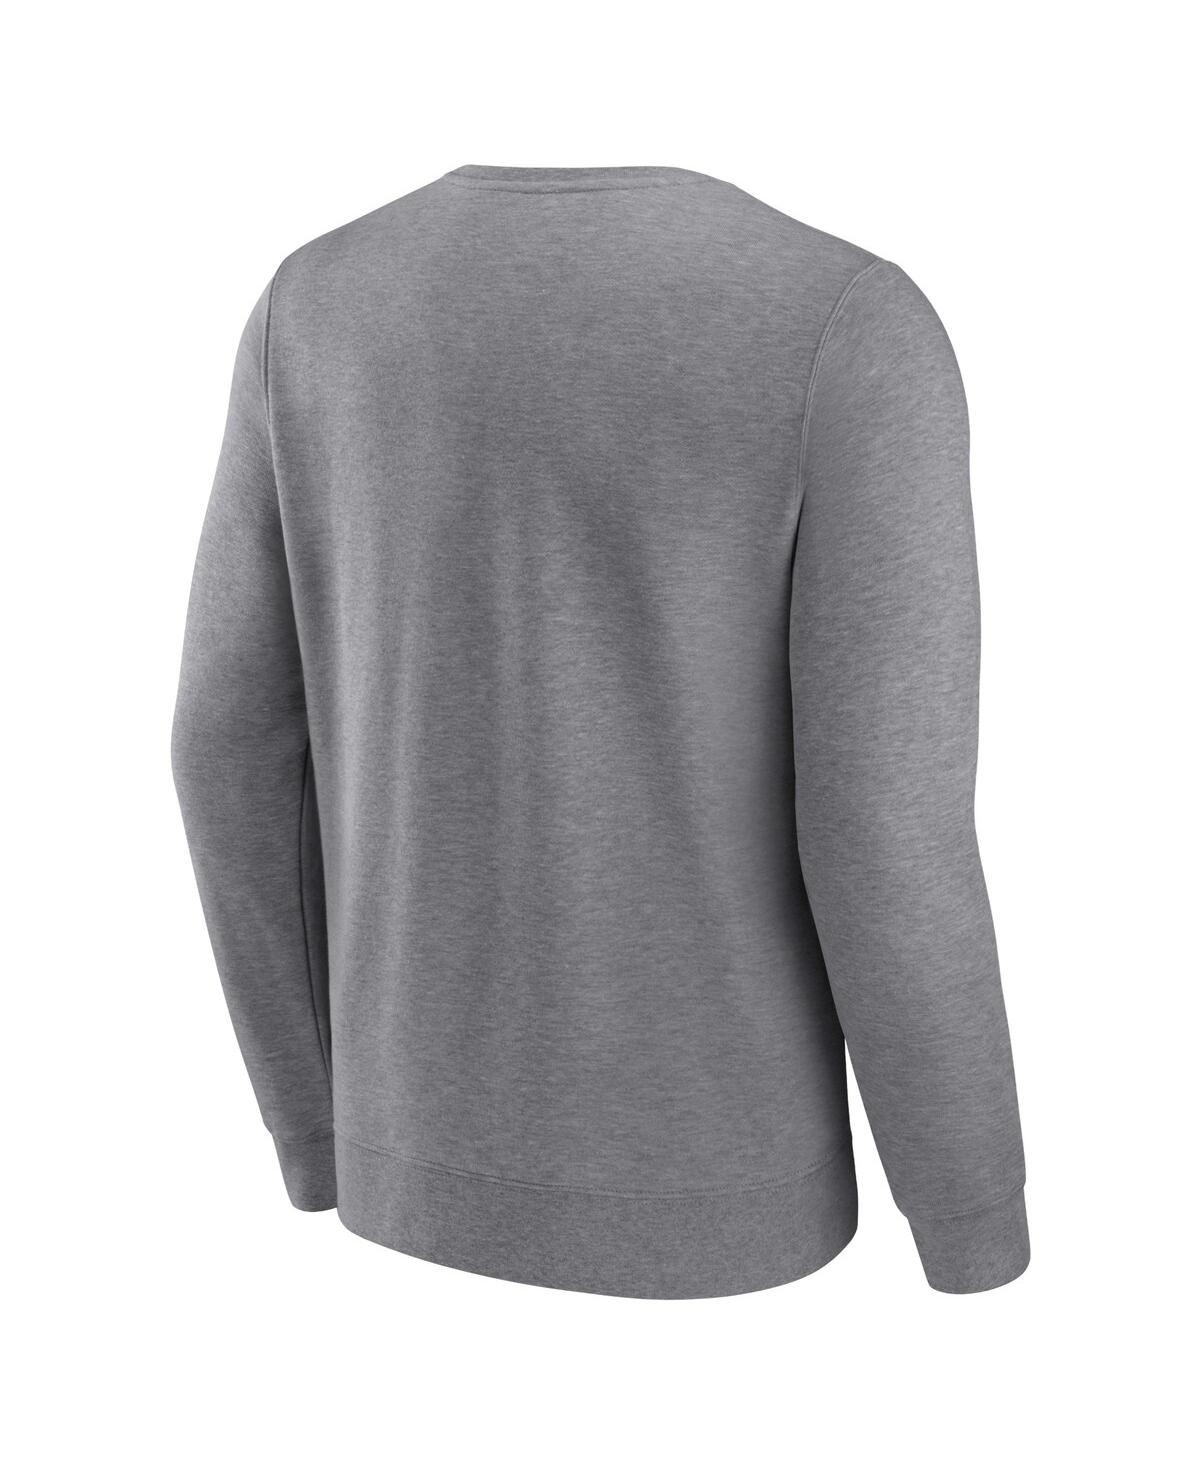 Shop Fanatics Men's  Heather Gray Atlanta Braves Simplicity Pullover Sweatshirt